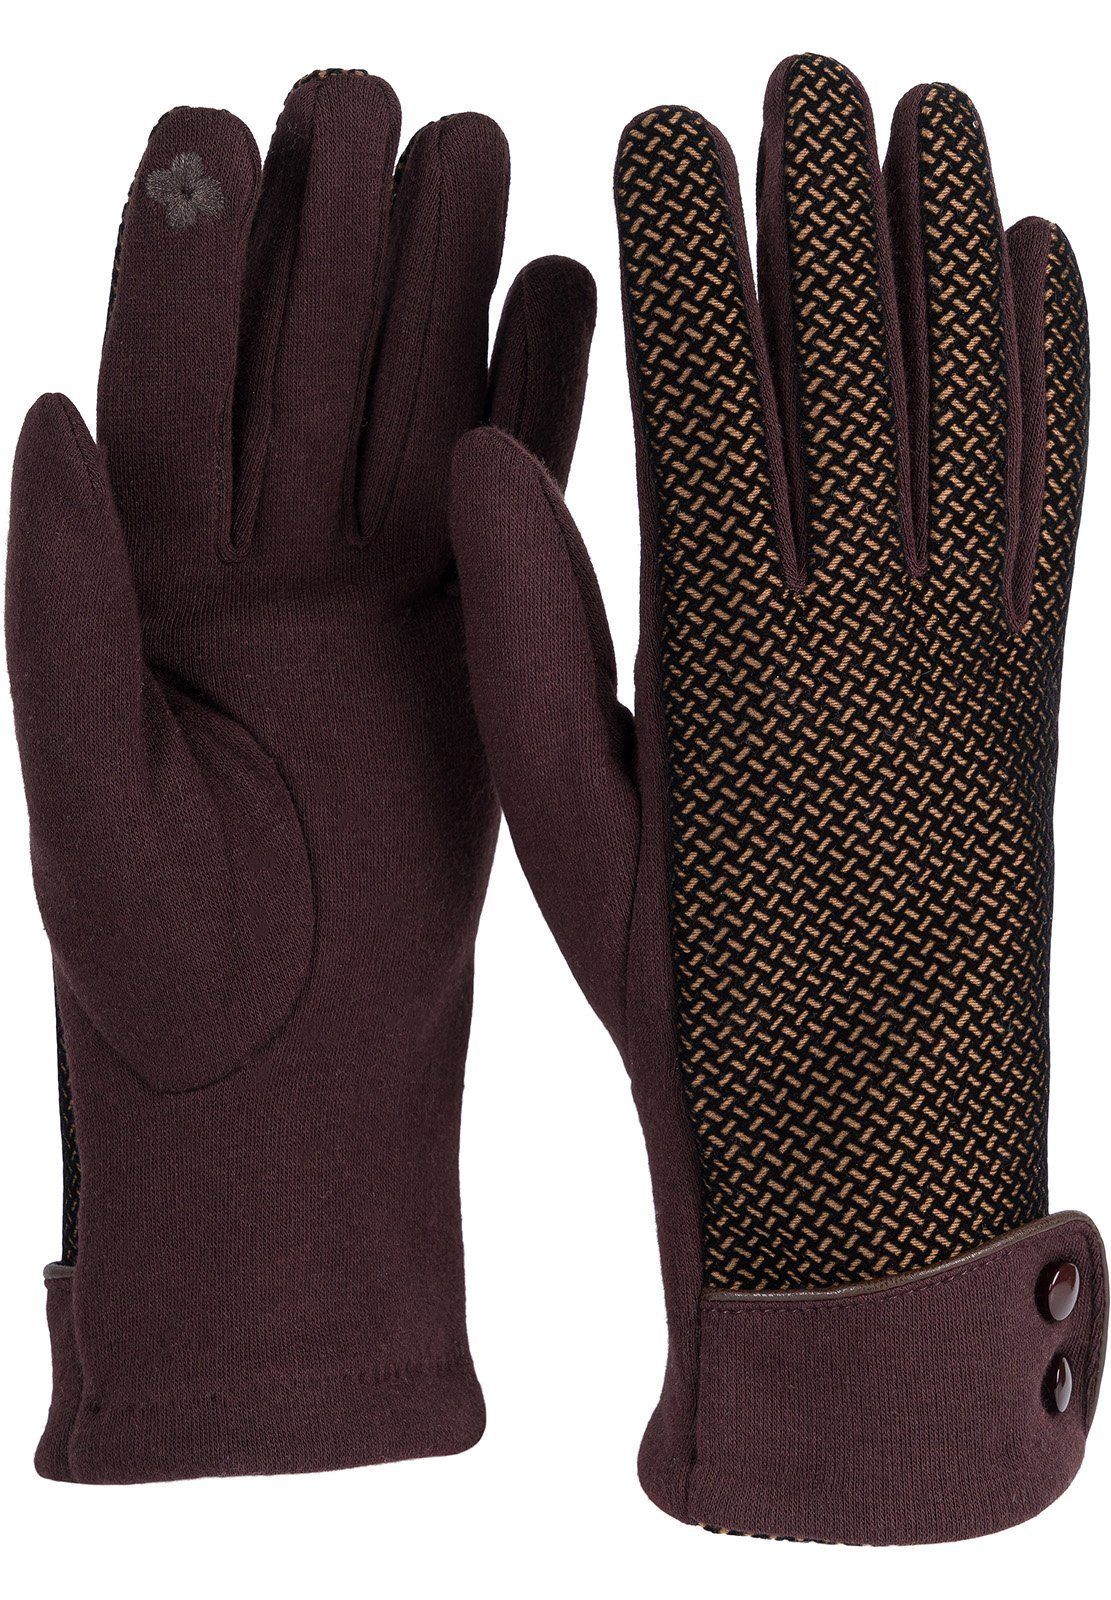 styleBREAKER Baumwollhandschuhe Touchscreen Handschuhe mit weichem Riffel Muster Dunkelbraun